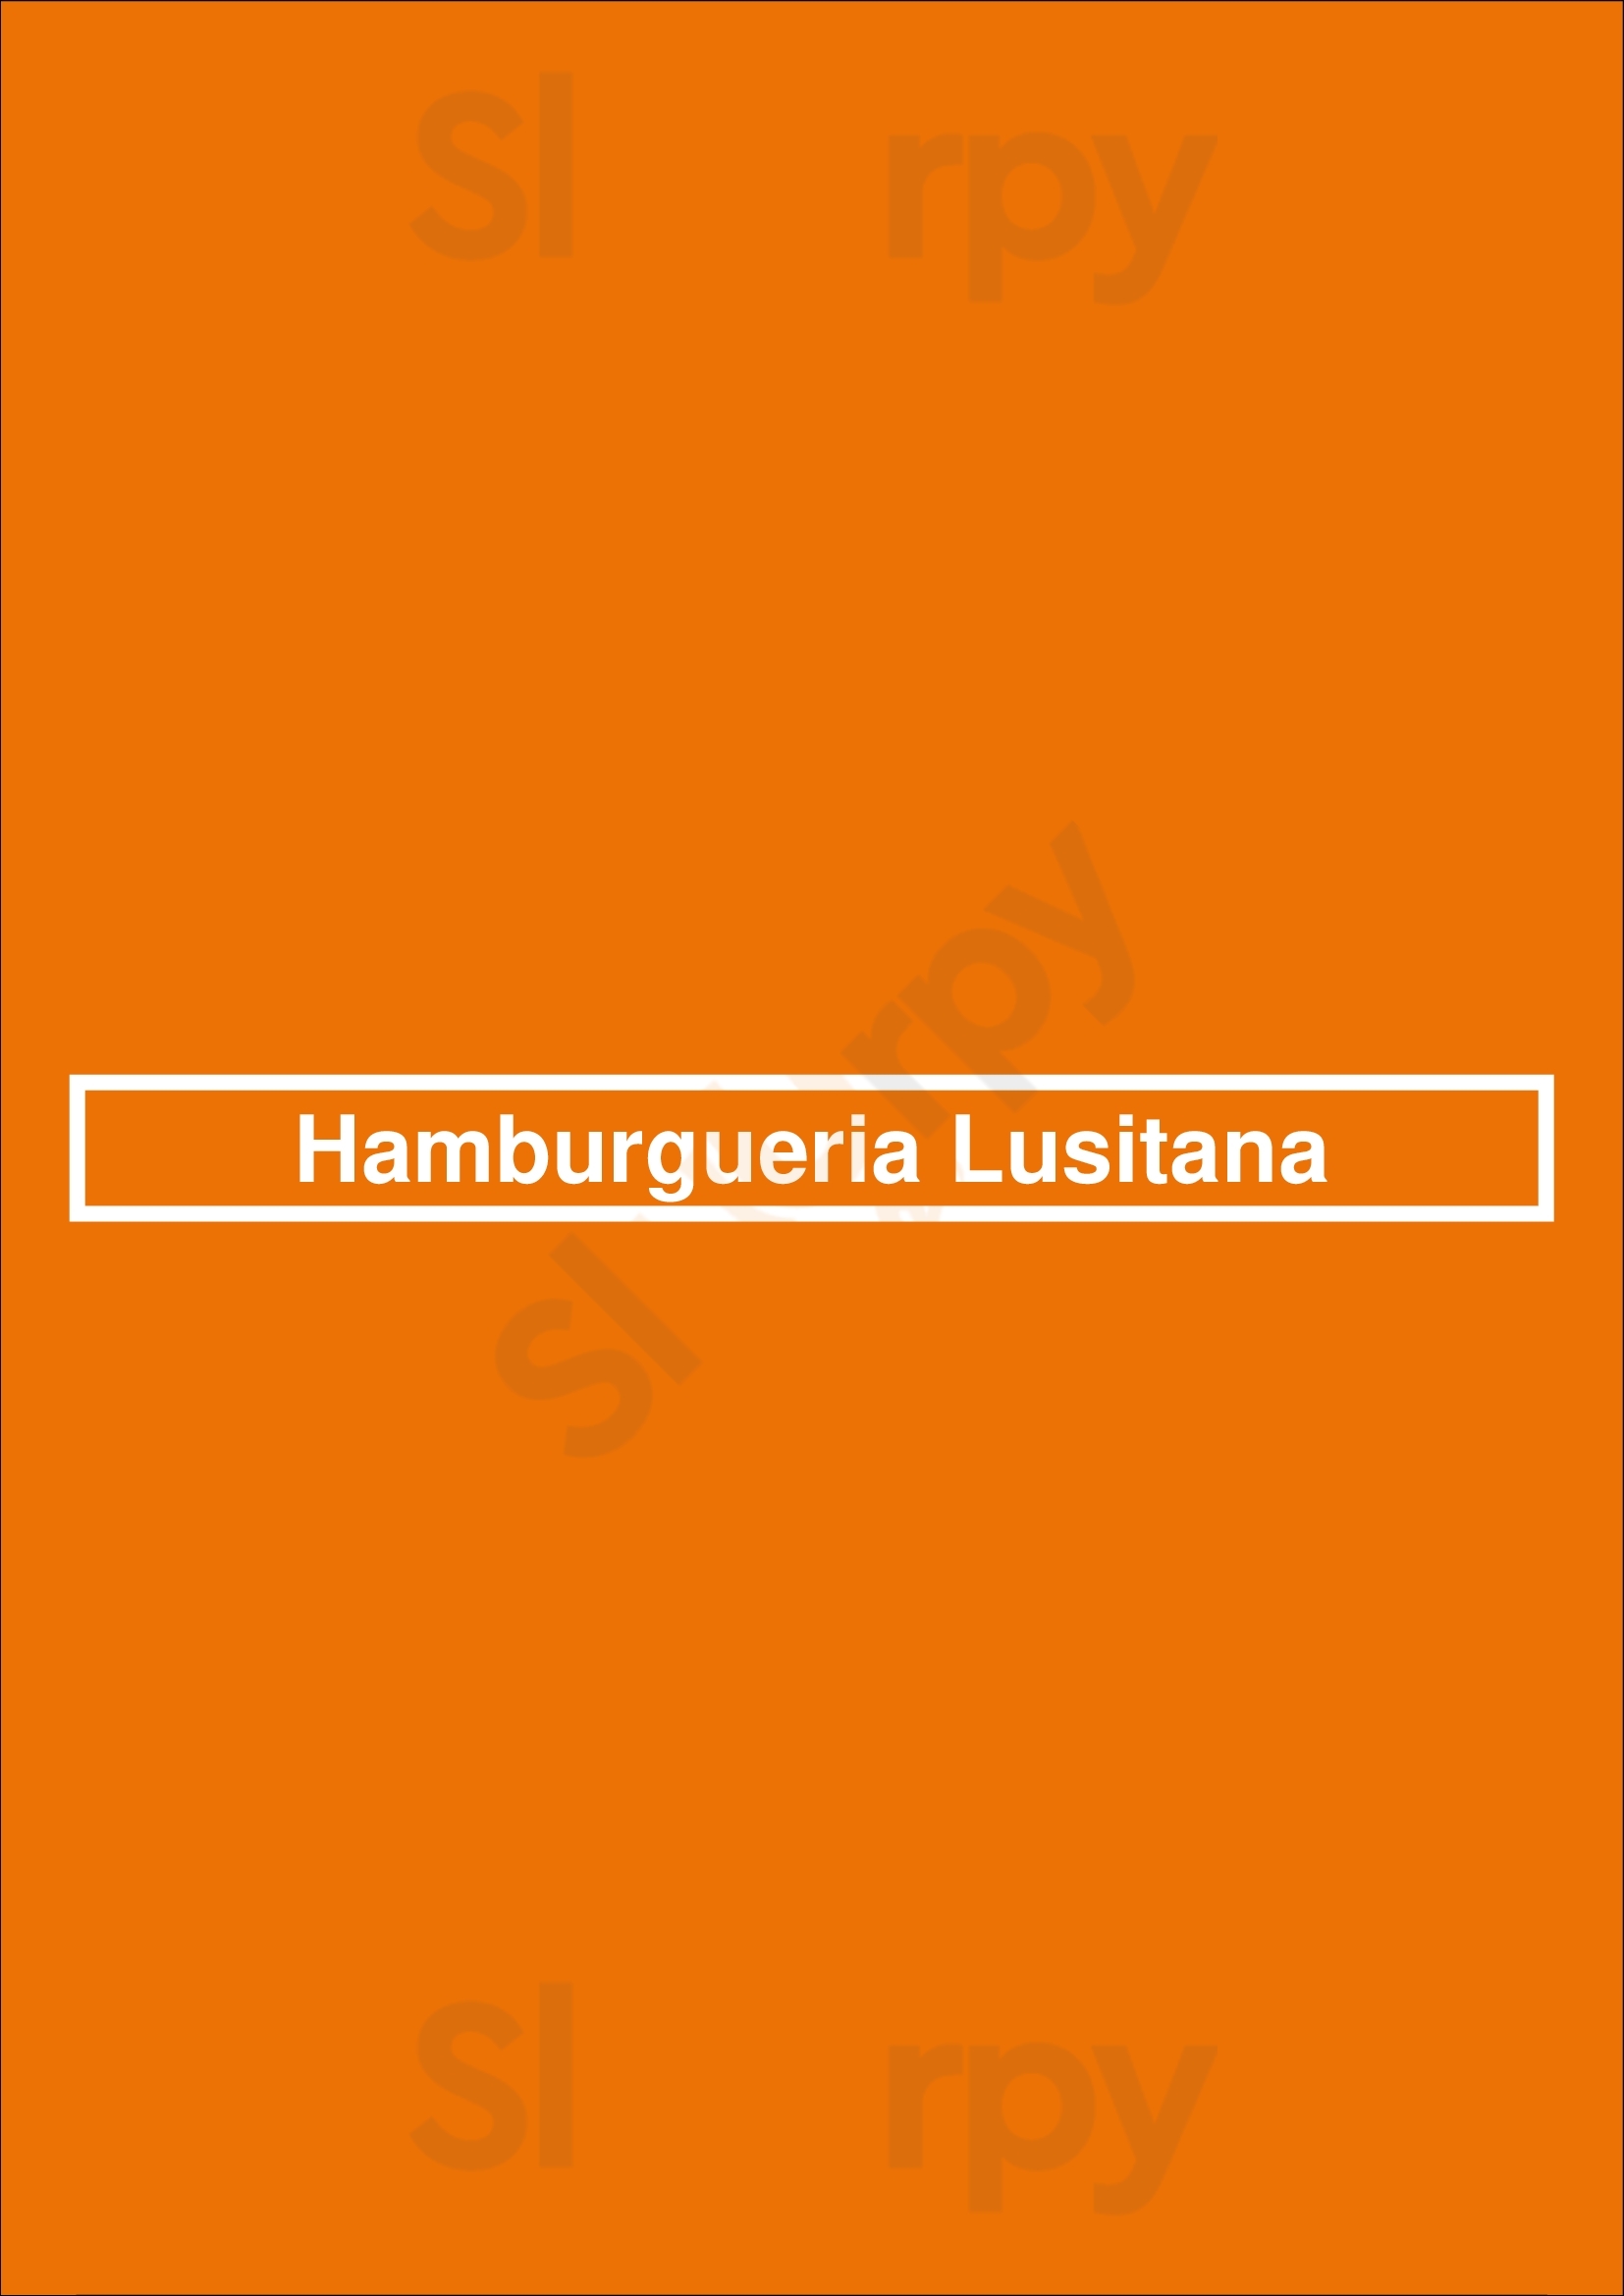 Hamburgueria Lusitana Lisboa Menu - 1